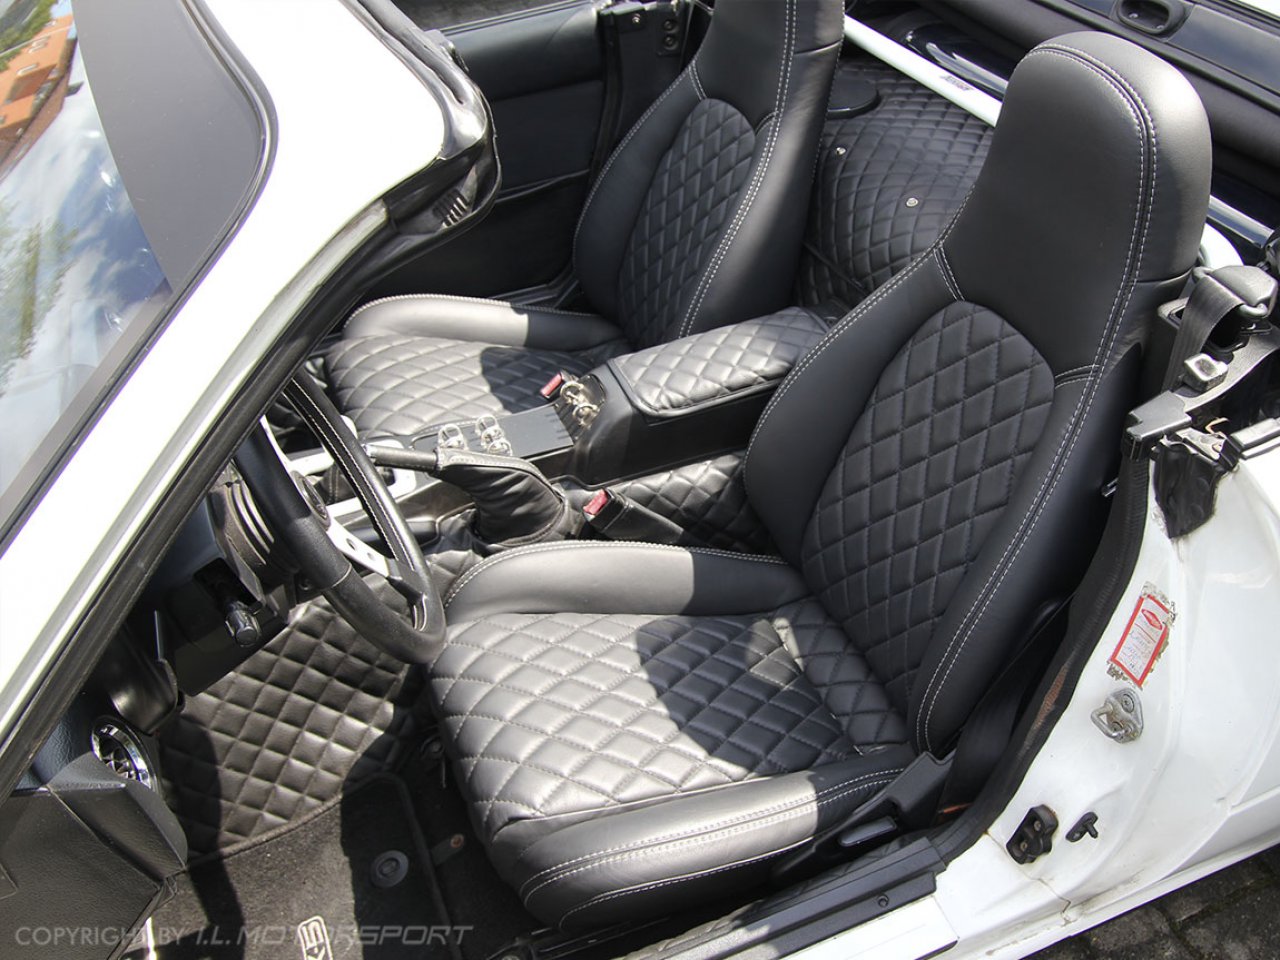 HA Handels GmbH Autositzbezüge passend für Mazda MX-5 in Schwarz Rot Royal  Auto-Sitzbezüge Vordersitze Auto-Sitzbezug Universal Set Fahrersitz und